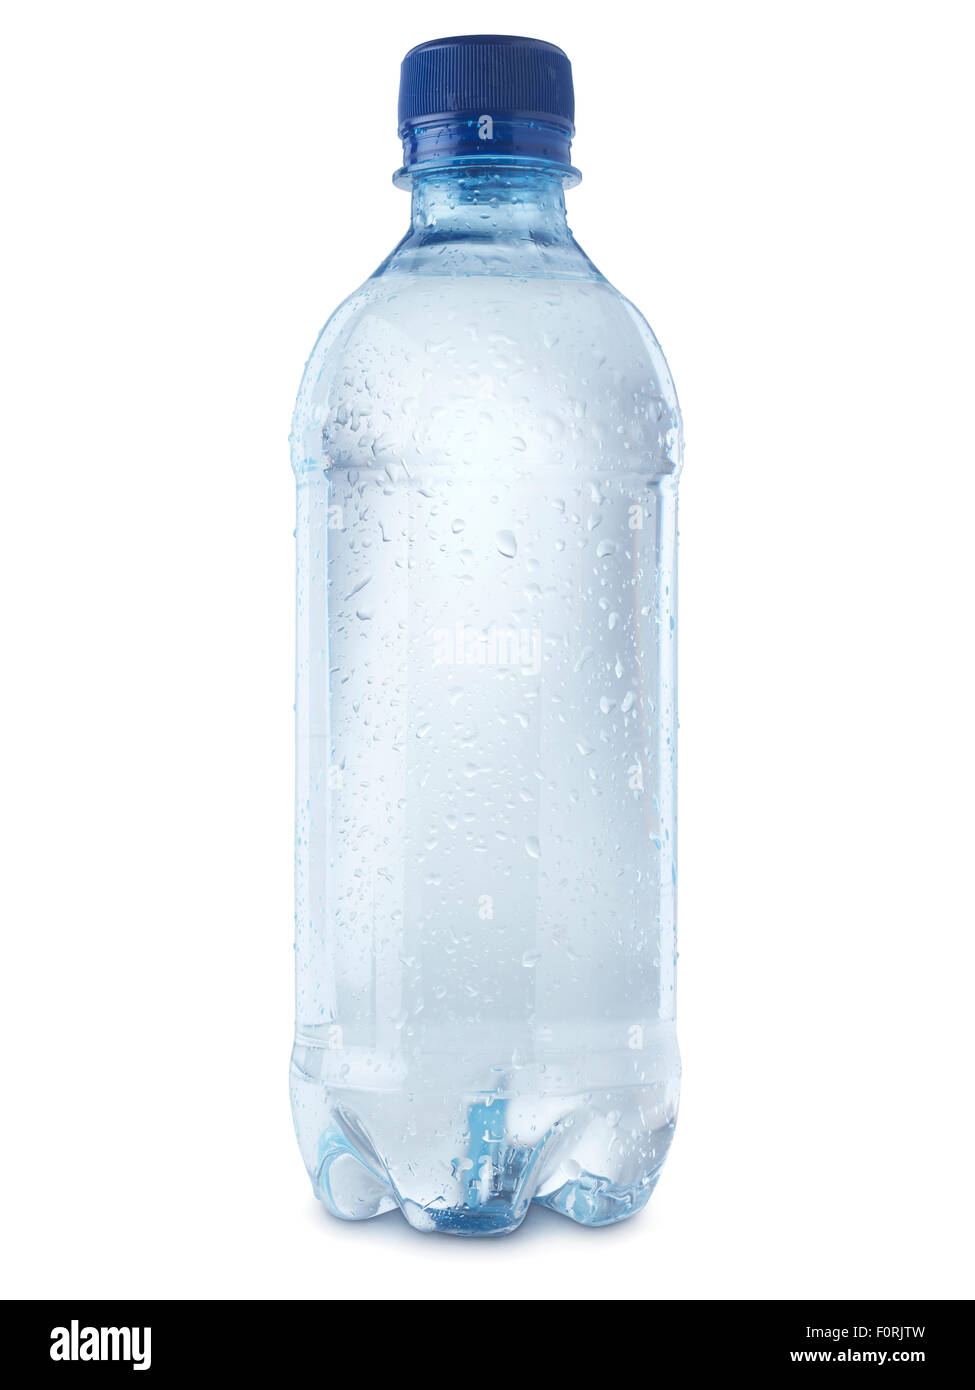 Schuss der Mineralwasserflasche isoliert auf einem weißen Hintergrund mit  einem Beschneidungspfad, Kondensation Blasen zeigen Coldne abgedeckt  Stockfotografie - Alamy